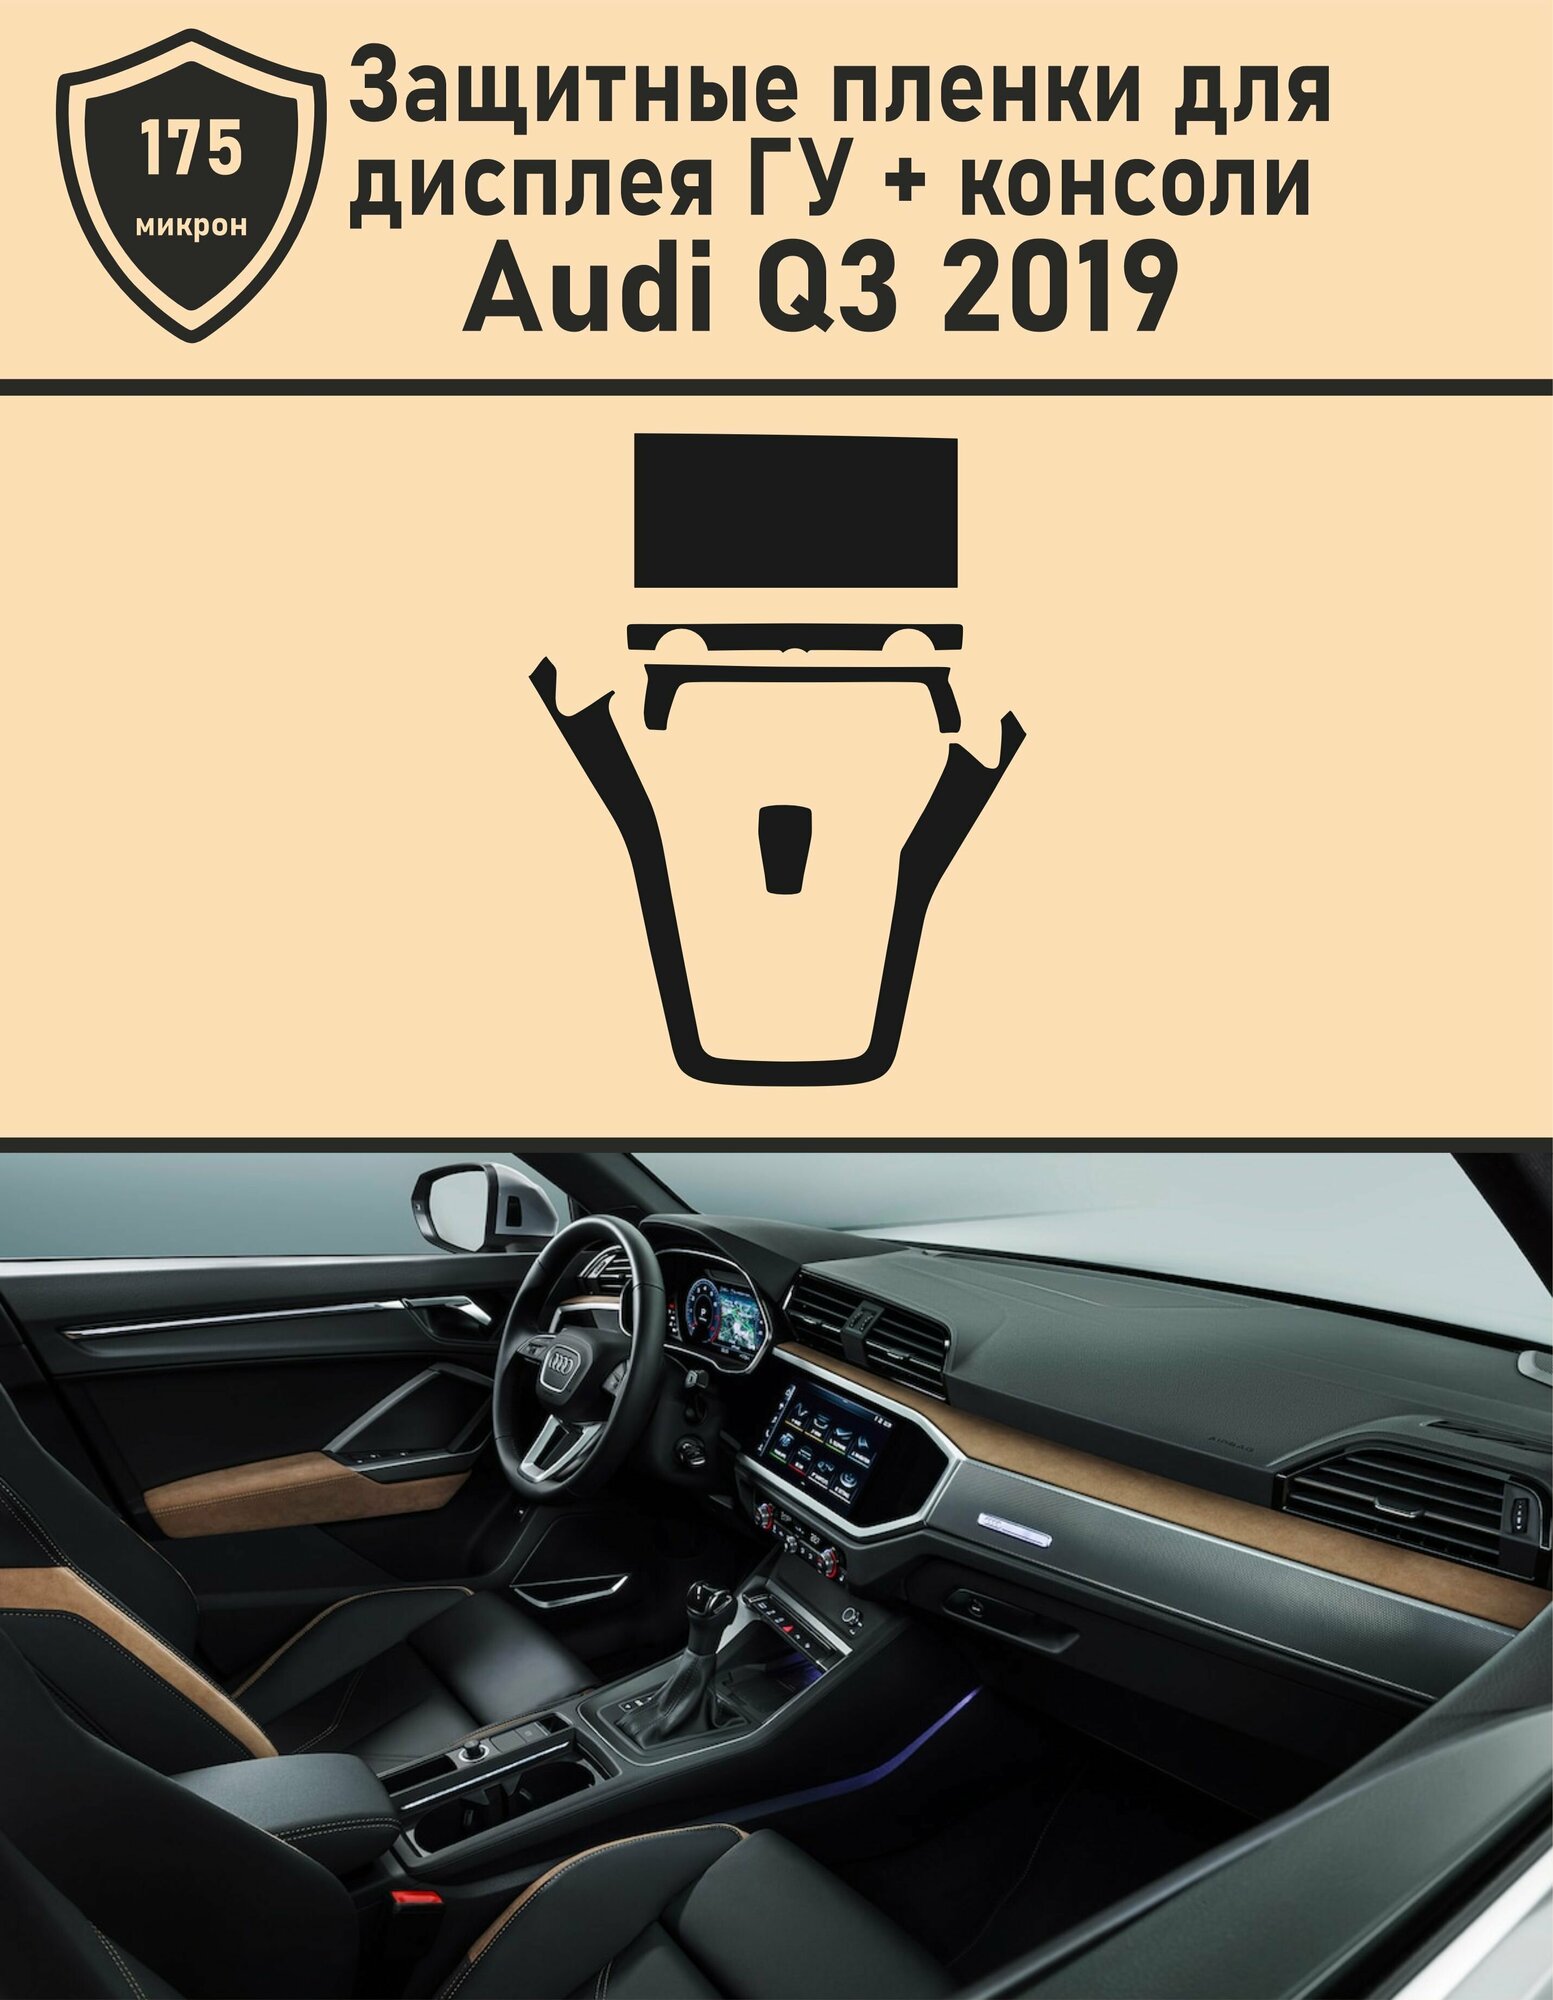 Audi Q3/Комплект защитных пленок для дисплея ГУ и консоли